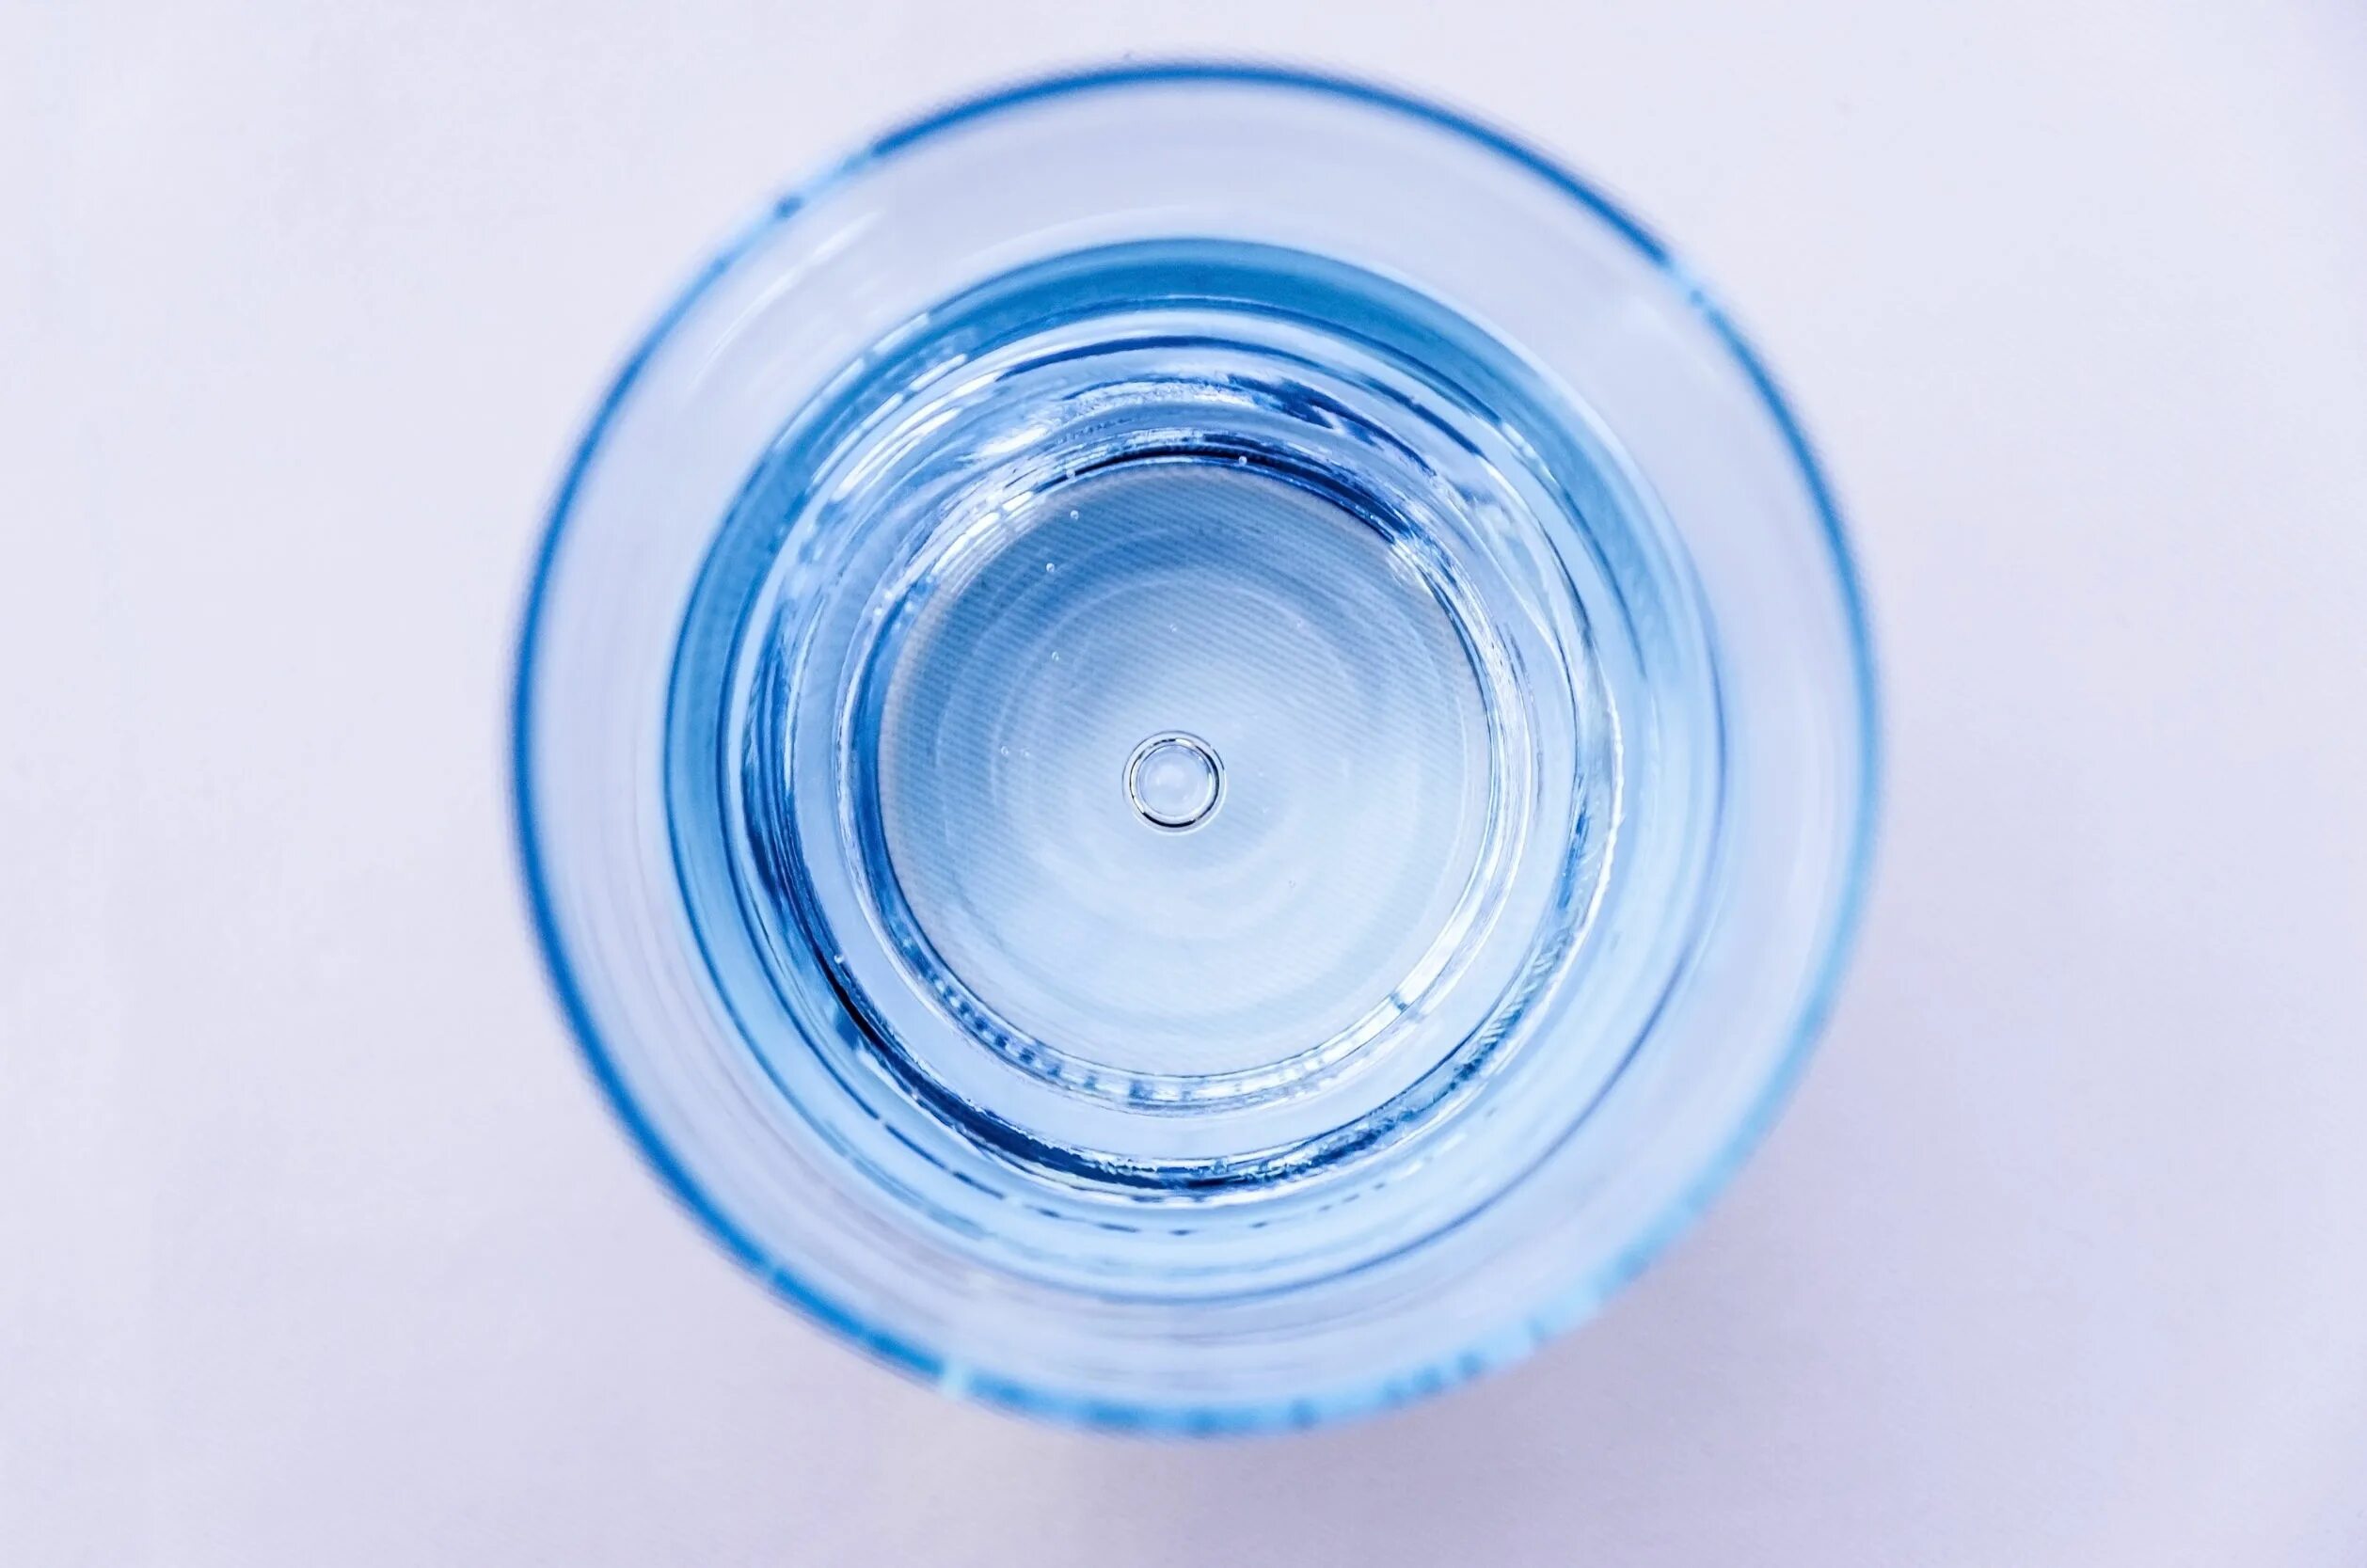 Стакан воды сверху. Стеклянная миска с водой вид сверху. Вода в прозрачной тарелке. Баклажки с водой сверху.